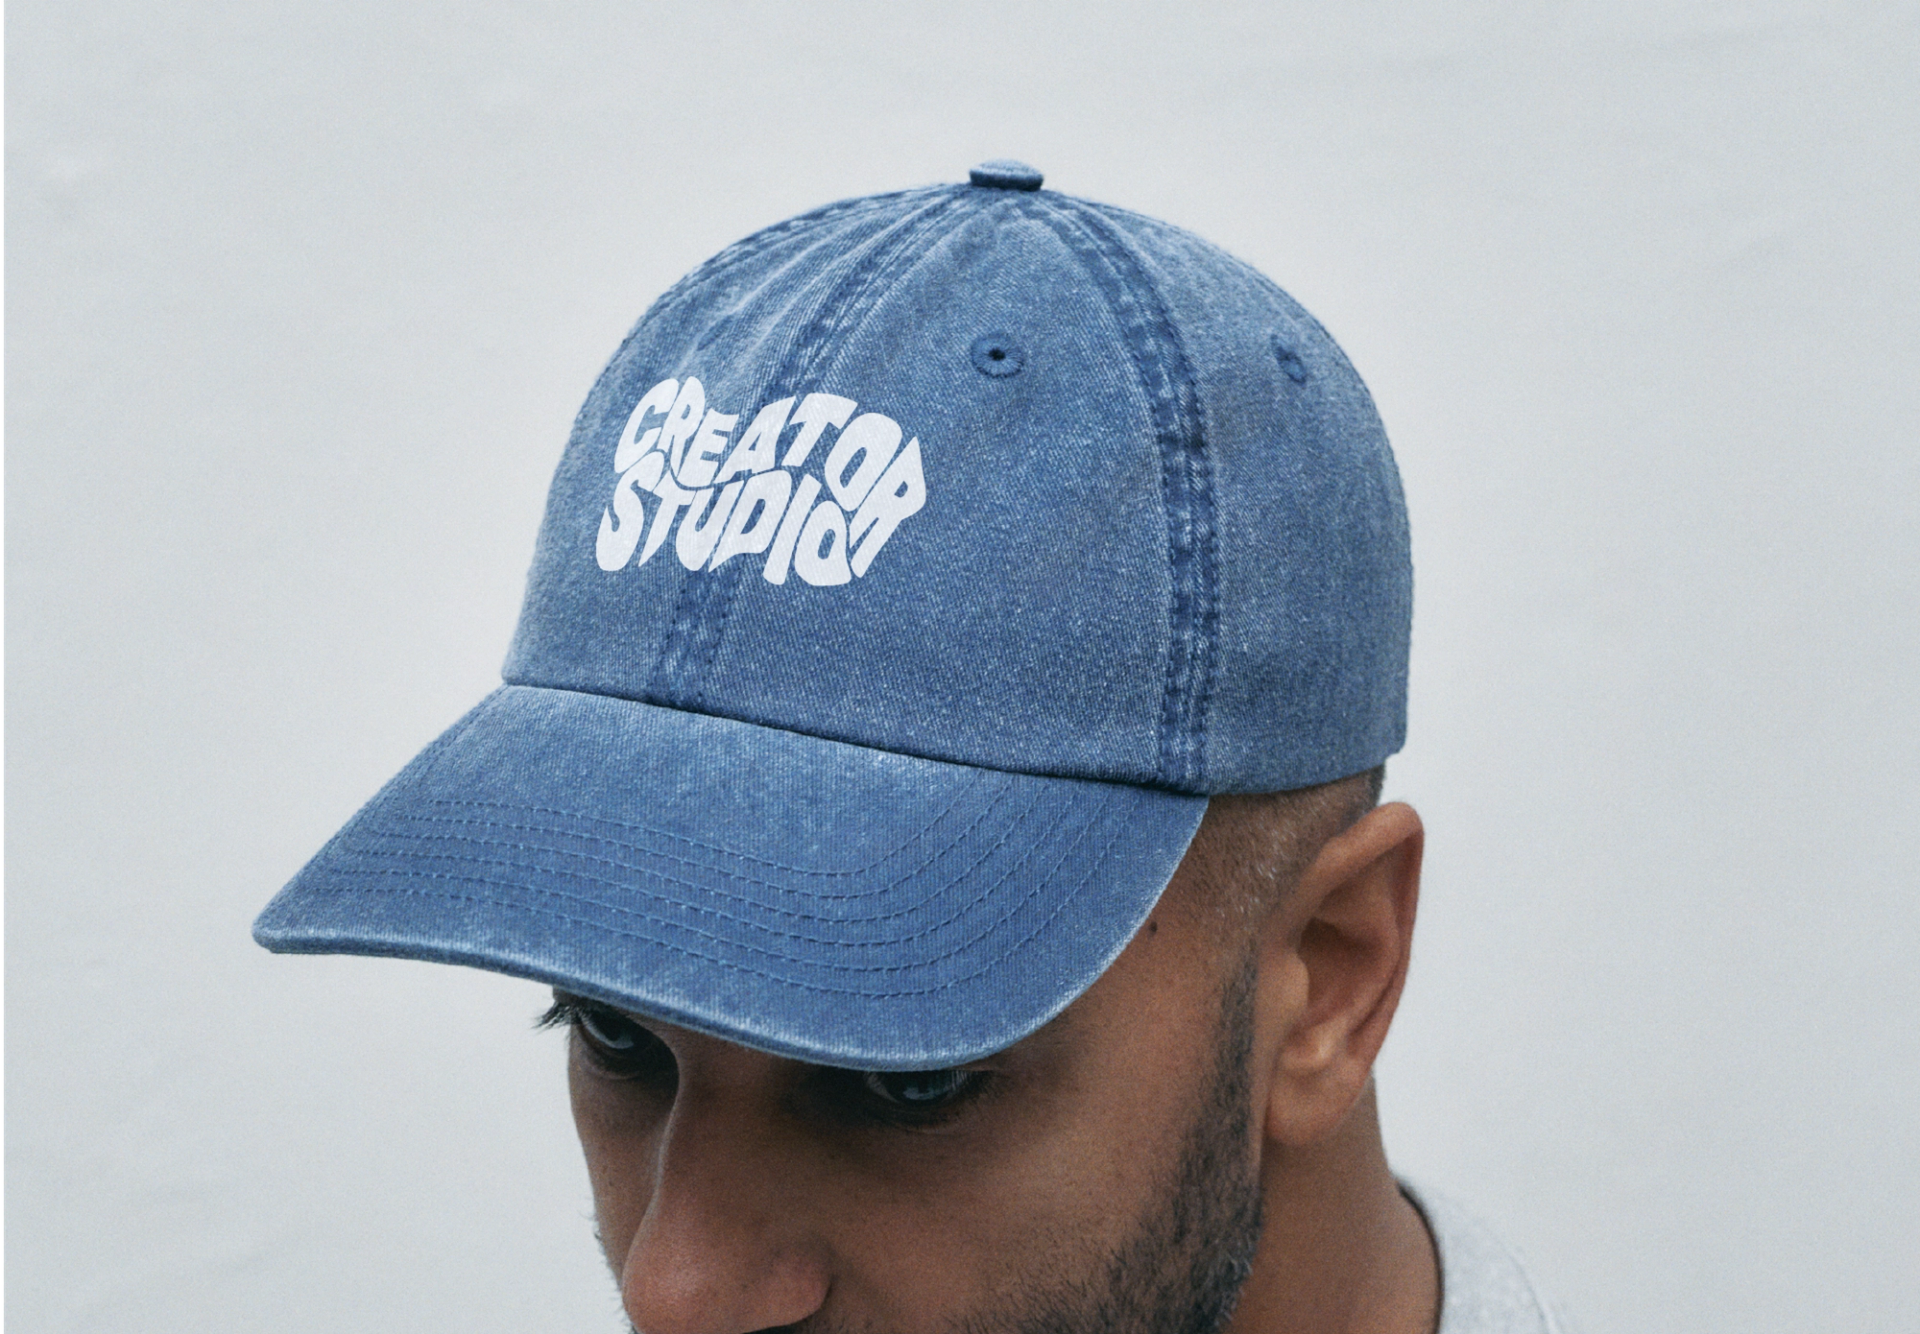 A Creator Studio custom printed cap